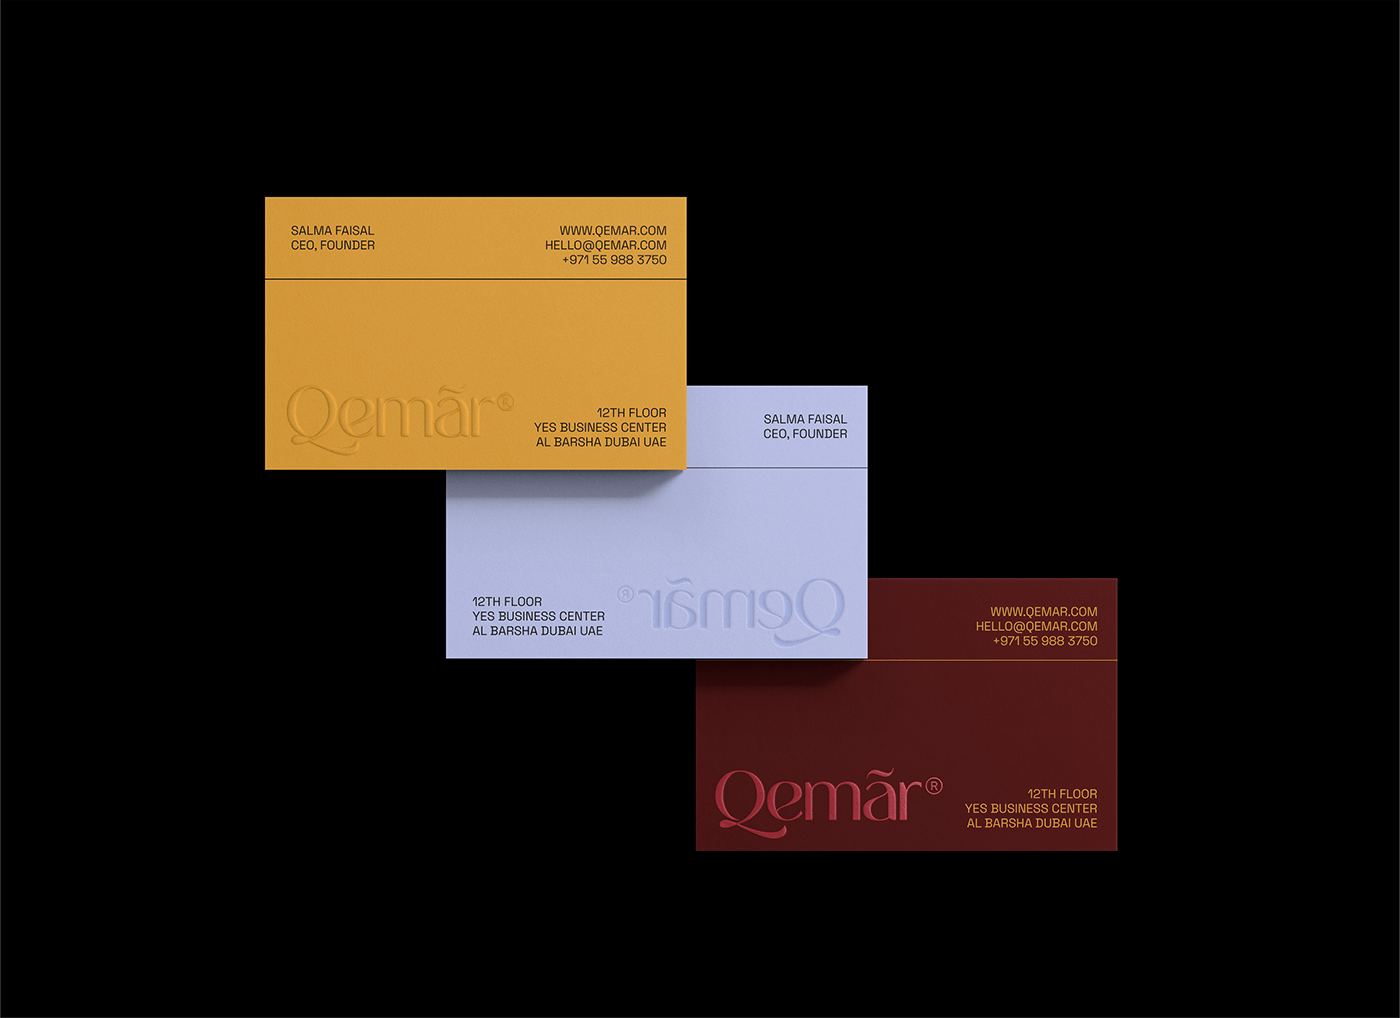 保養品牌Qemar極簡優雅的視覺形象設計 